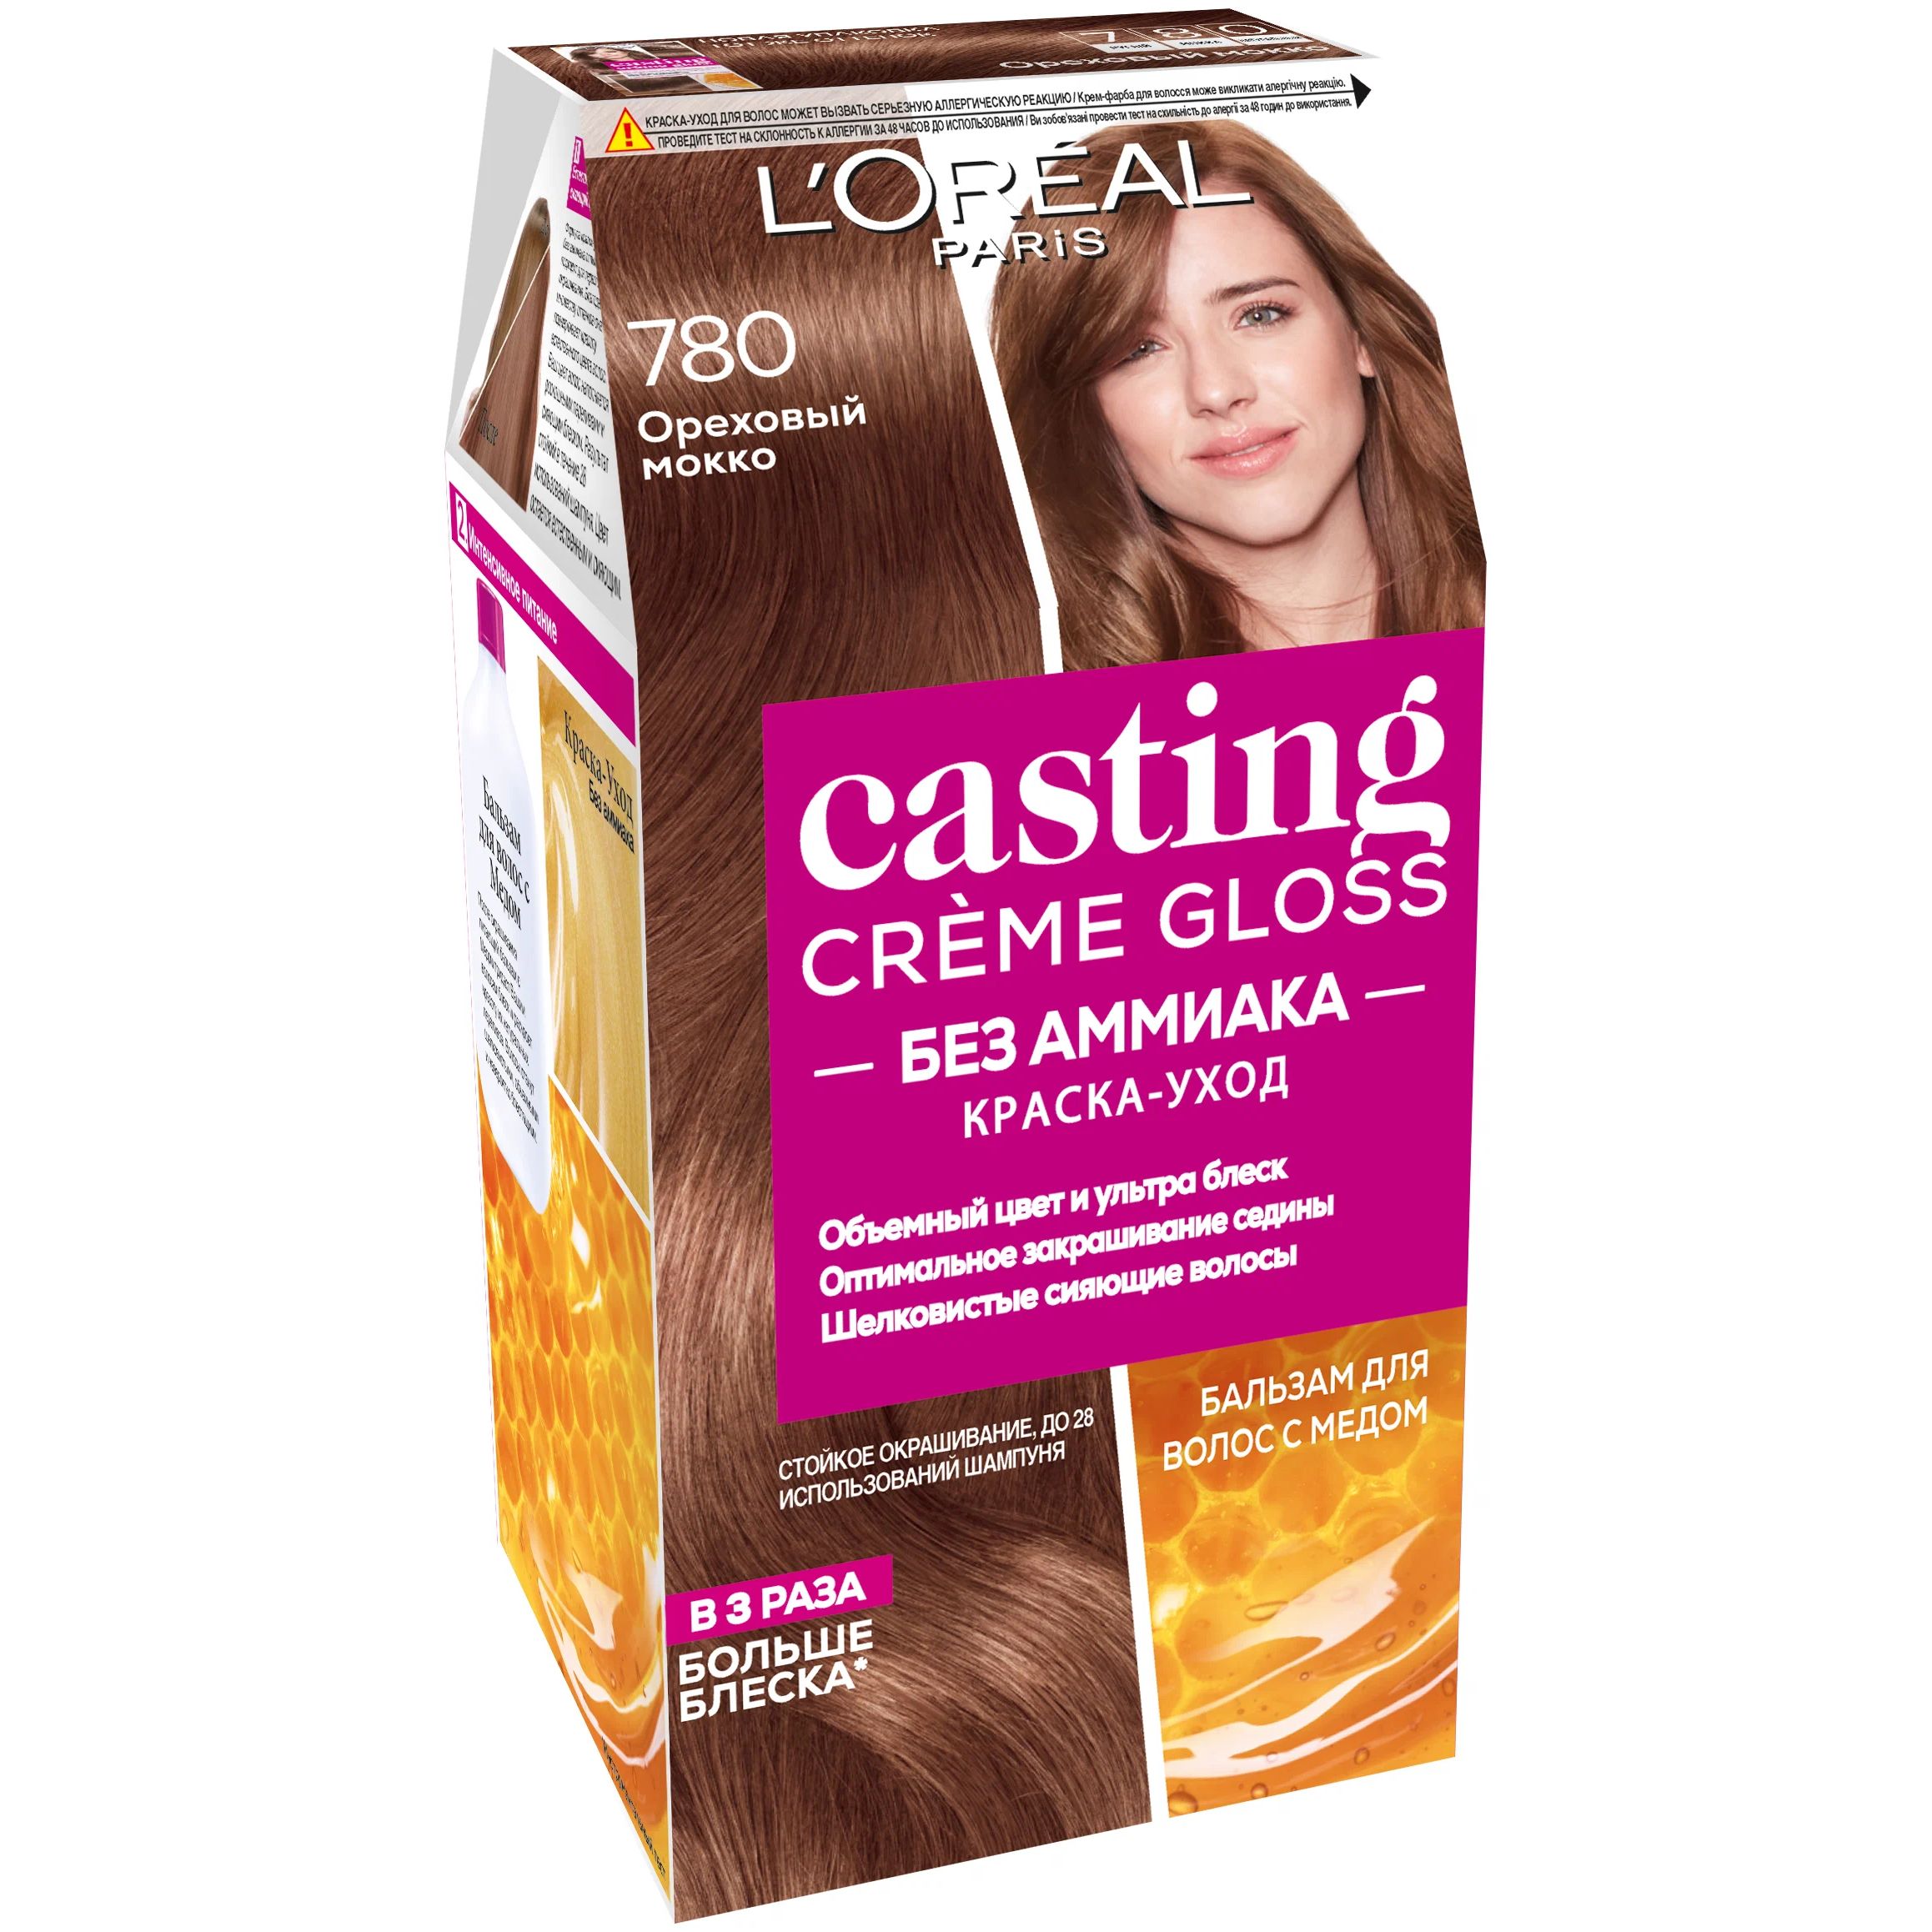 Краска-уход для волос L'Oreal Paris Casting Creme Gloss ореховый мокко, №780, 183 мл